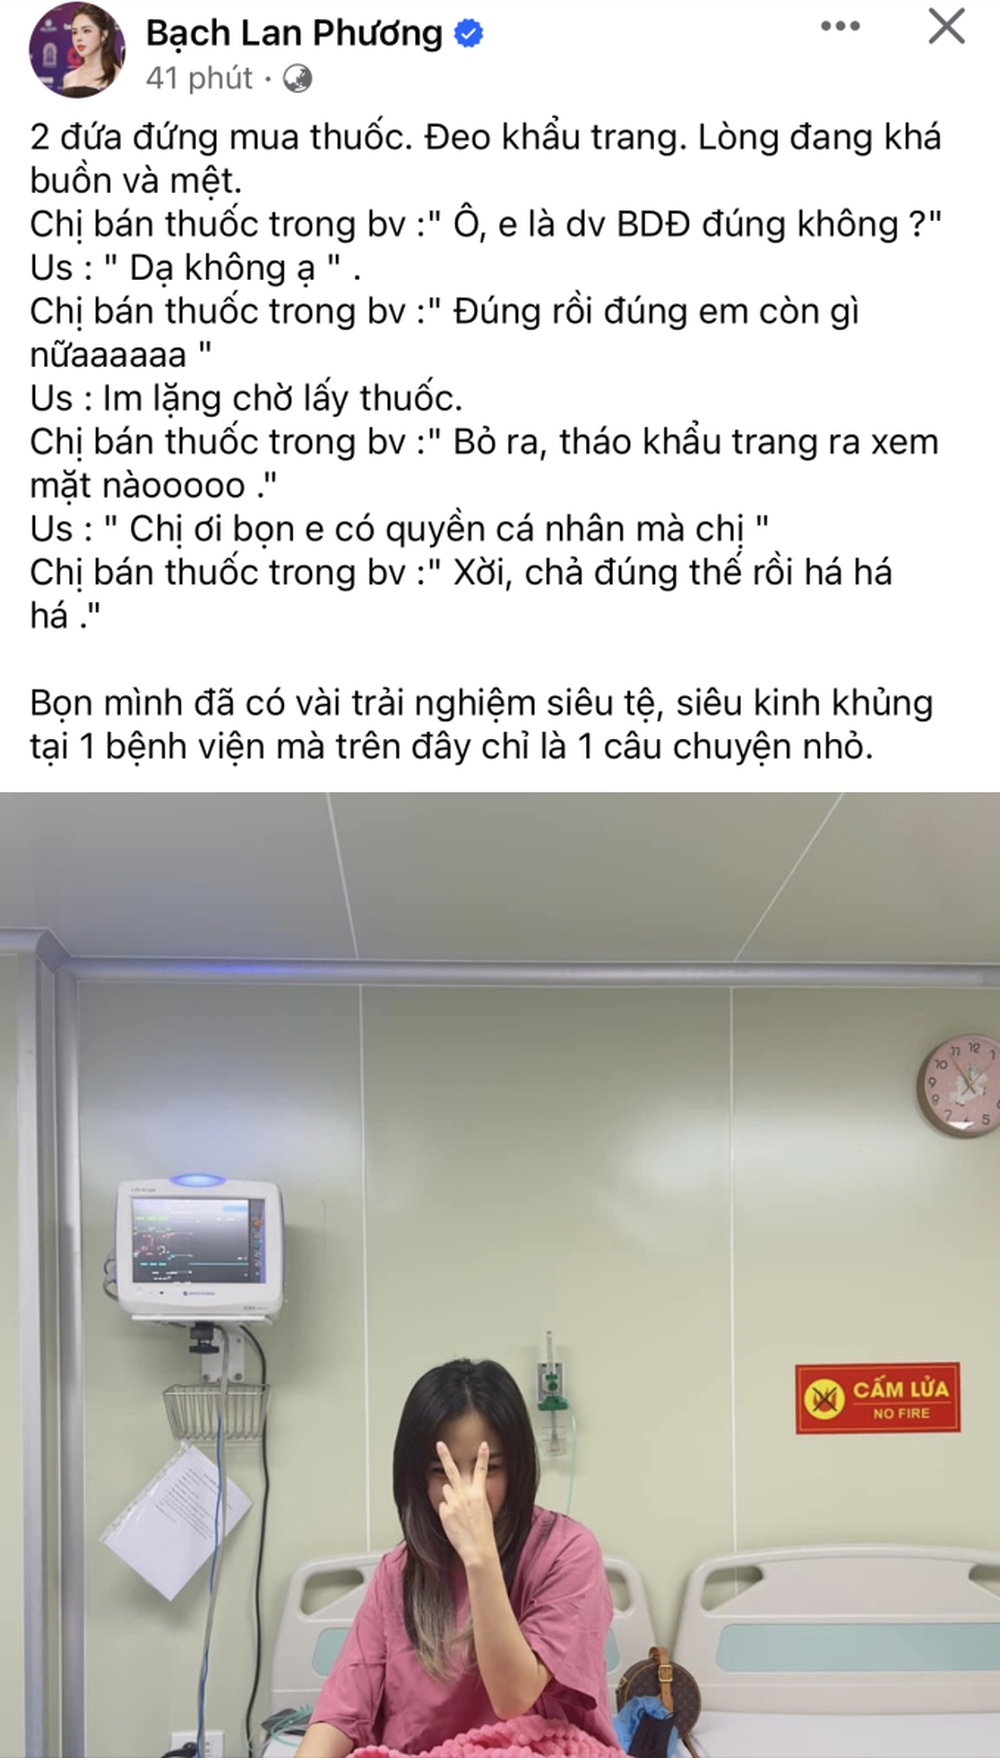 Sau khi thông báo mất con, bạn gái Huỳnh Anh tiết lộ gặp thêm vấn đề gây bức xúc trong bệnh viện - Ảnh 1.